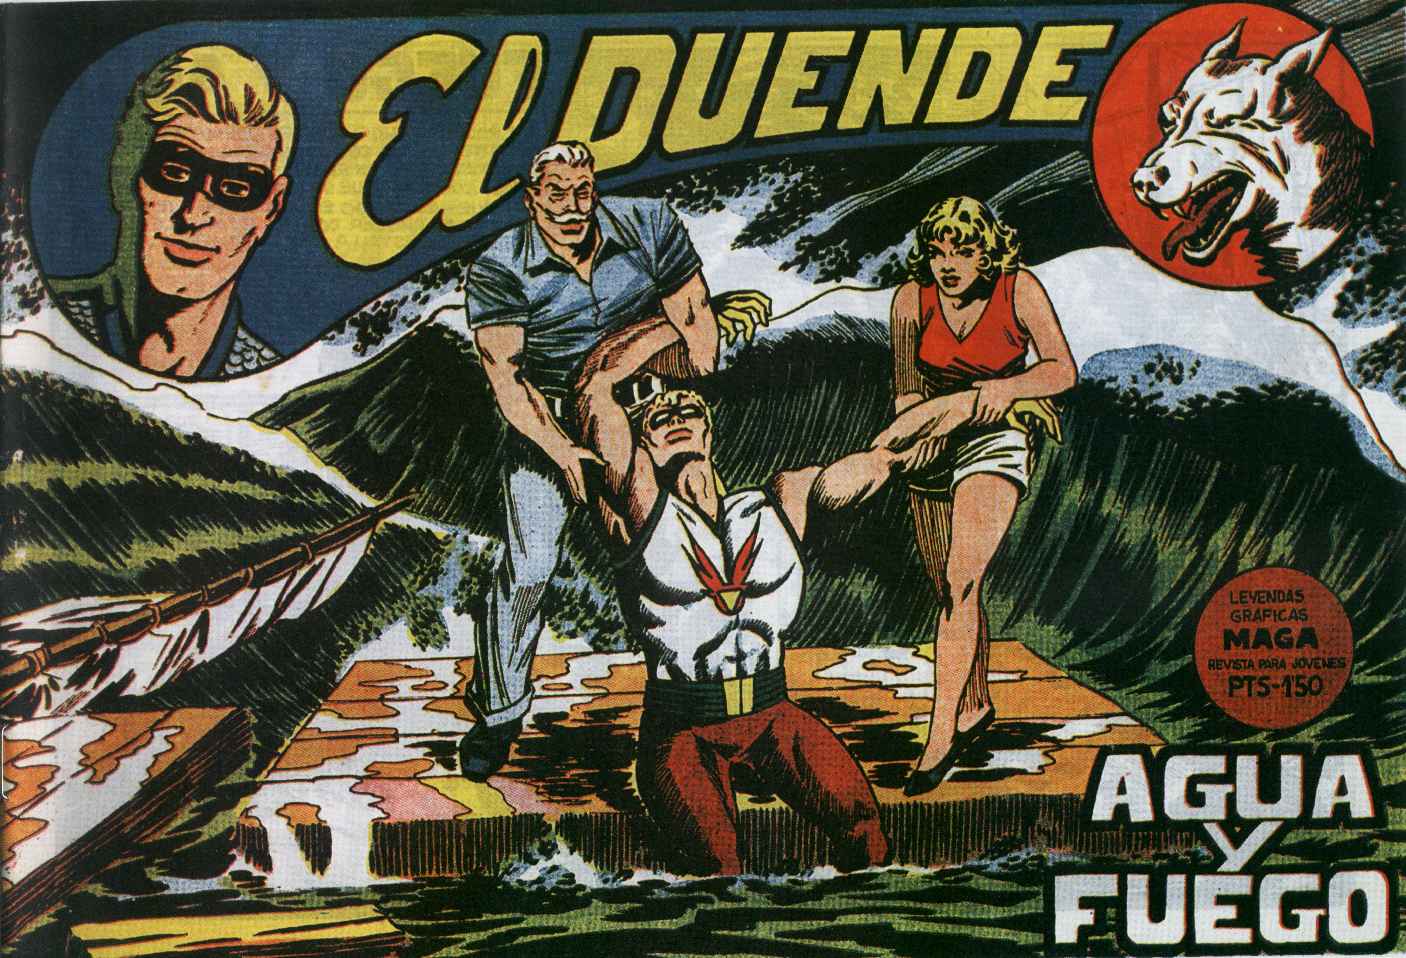 Comic Book Cover For El Duende 19 - Agua y fuego